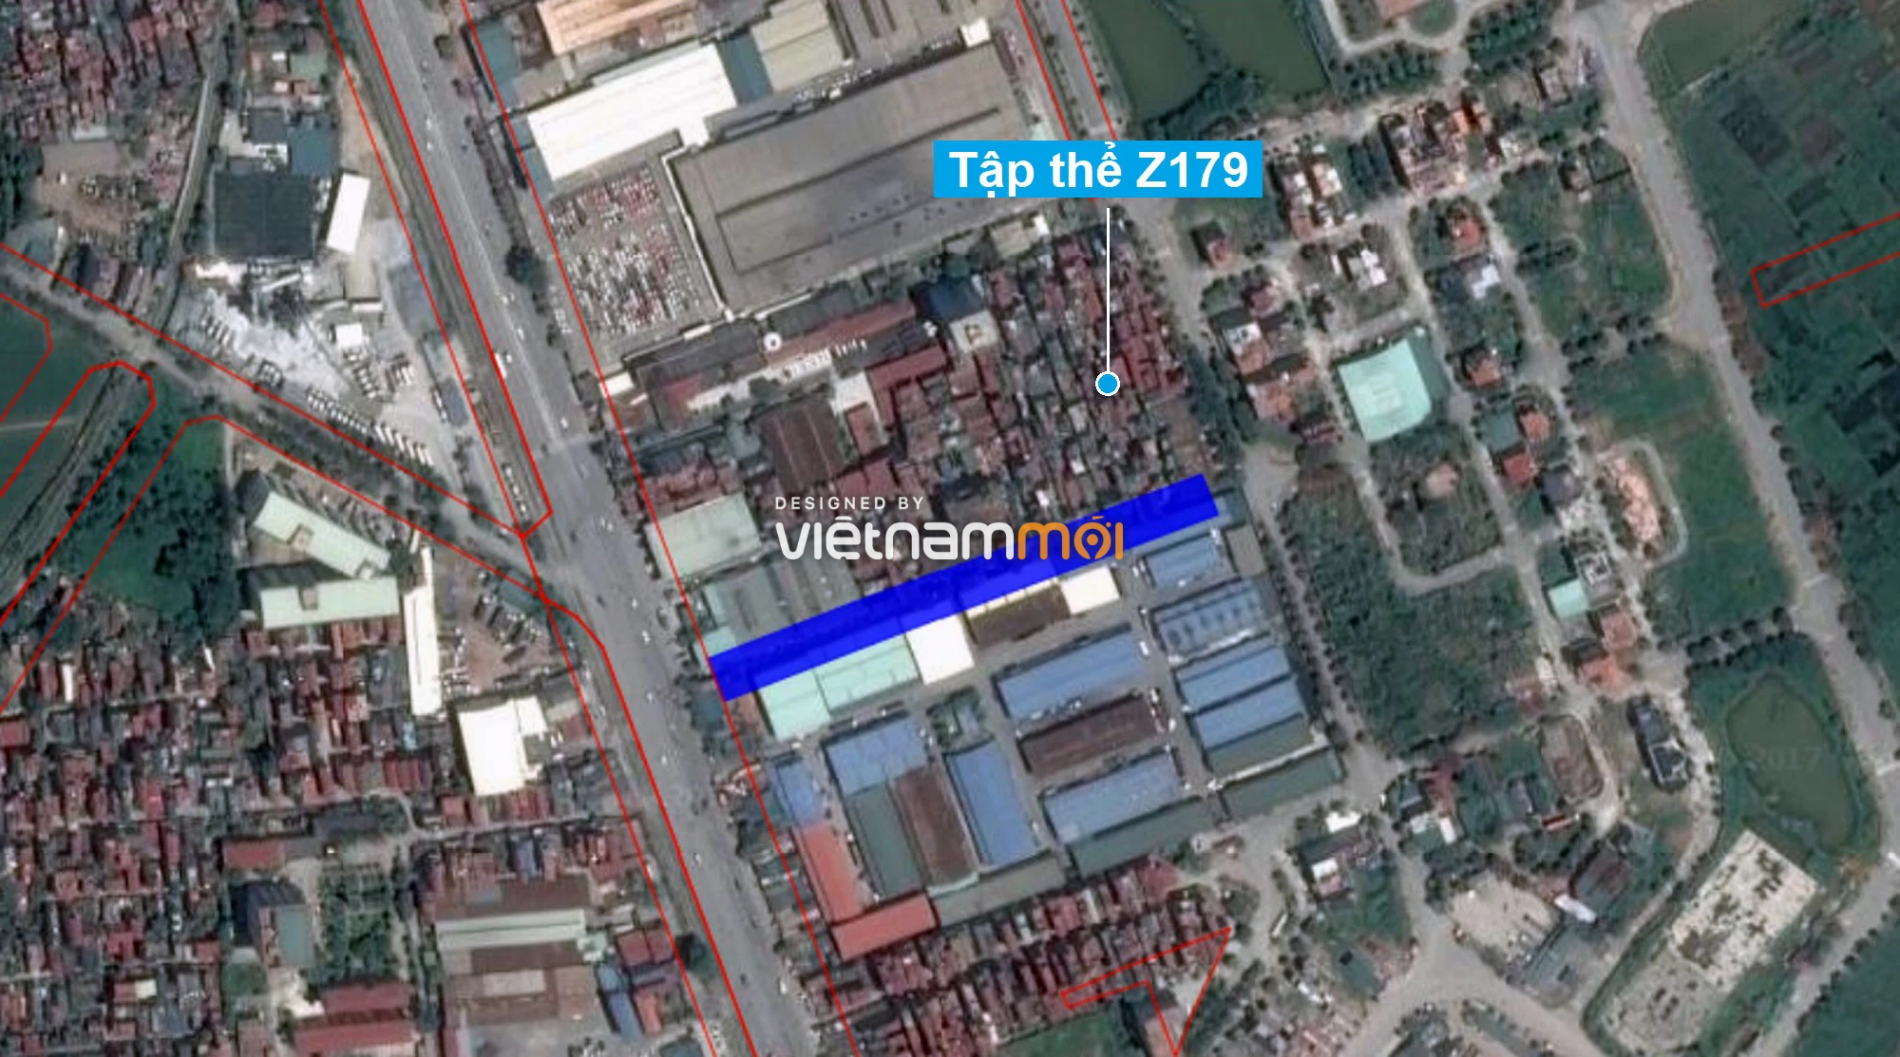 Những khu đất sắp thu hồi để mở đường ở xã Tứ Hiệp, Thanh Trì, Hà Nội (phần 3) - Ảnh 16.